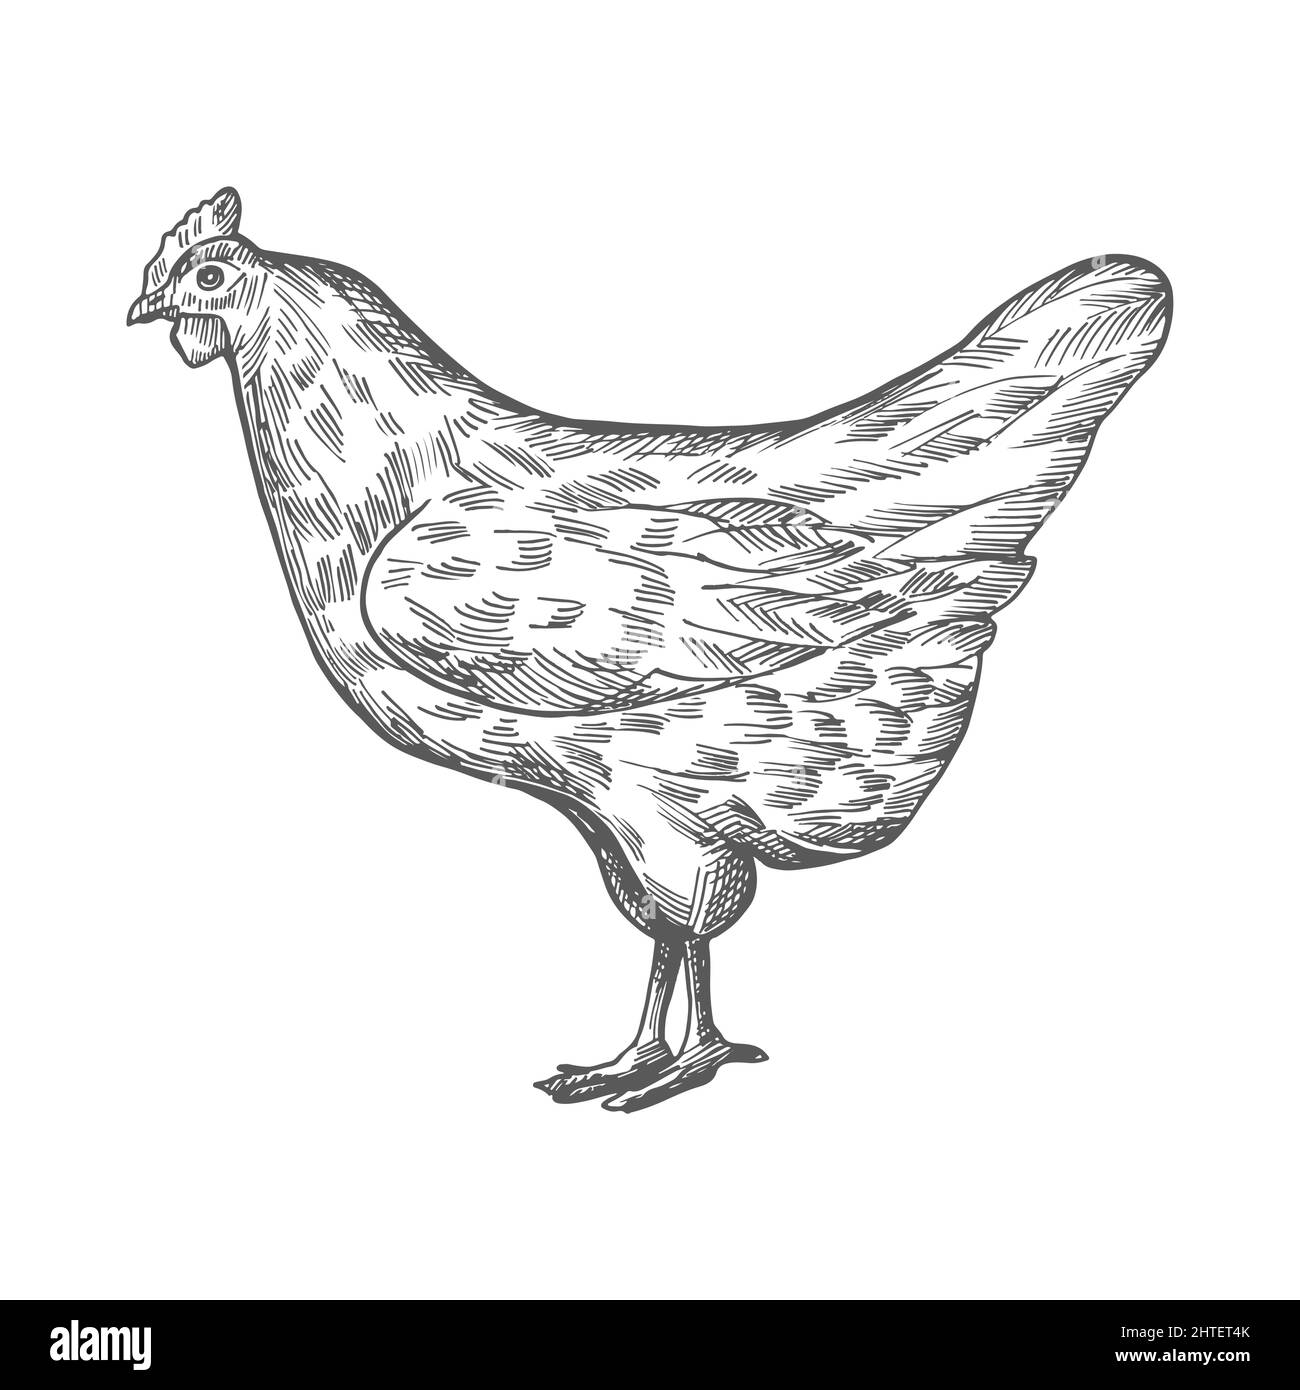 Schizzo di pollo. Disegno vettoriale vintage disegno a mano di pollo isolato su sfondo bianco. Vista laterale. Illustrazione Vettoriale